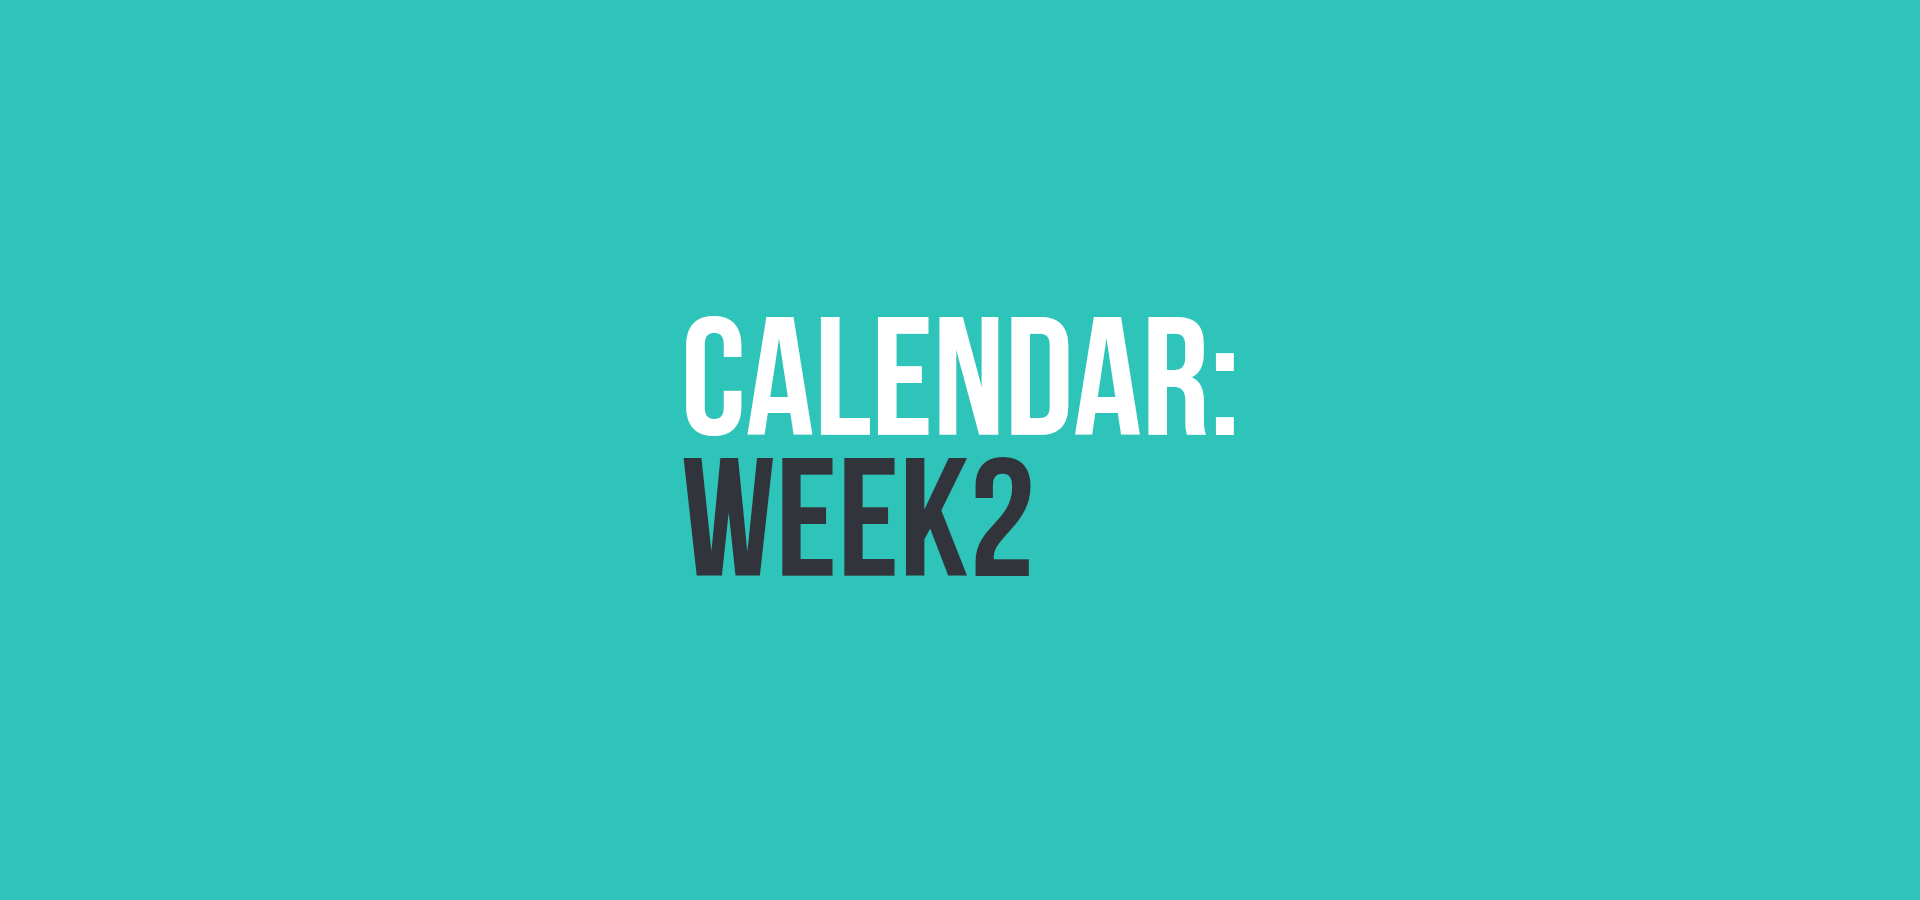 Calendar: Week 2